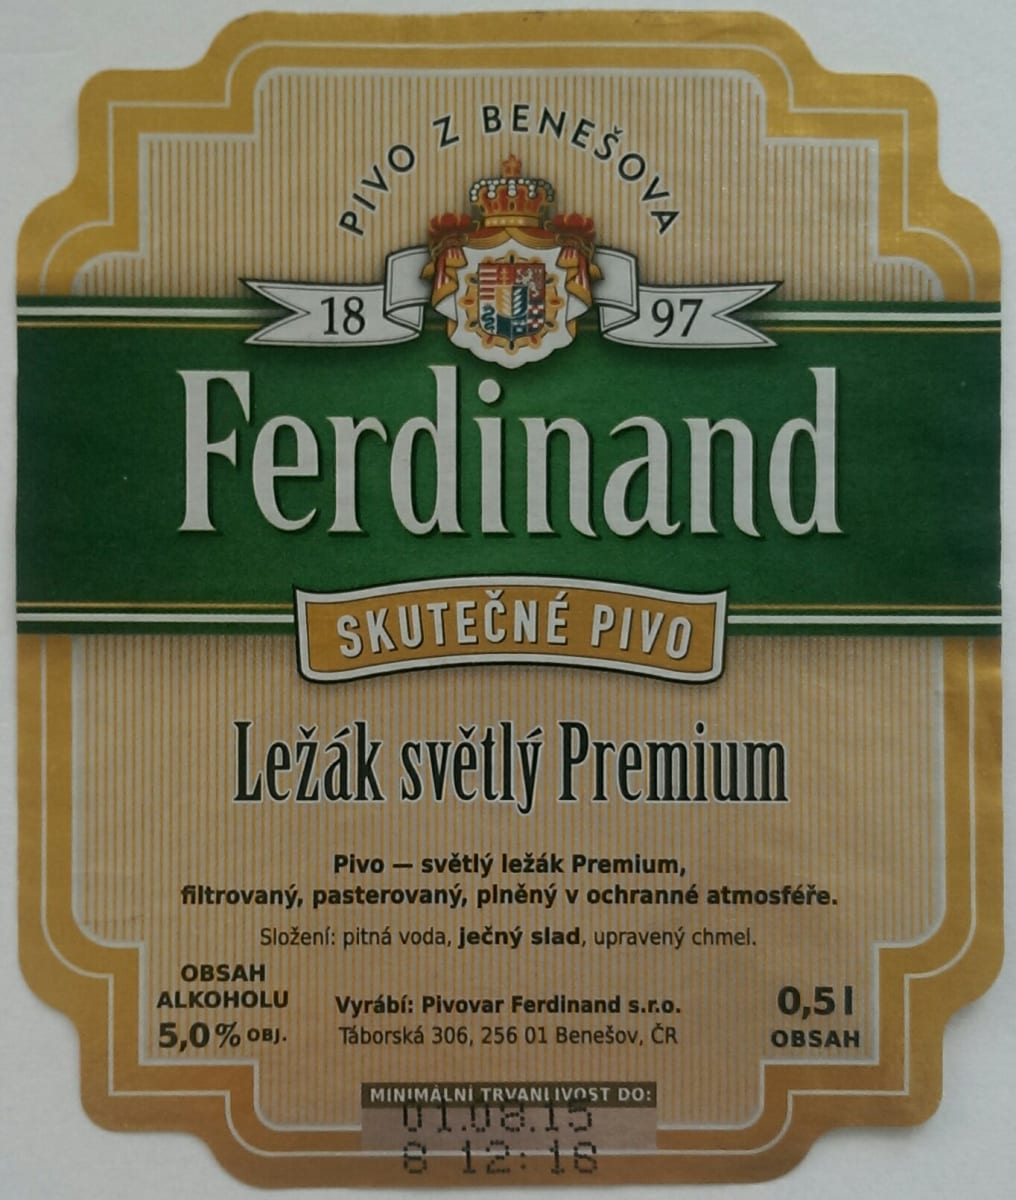 Ferdinand Ležák světlý Premium